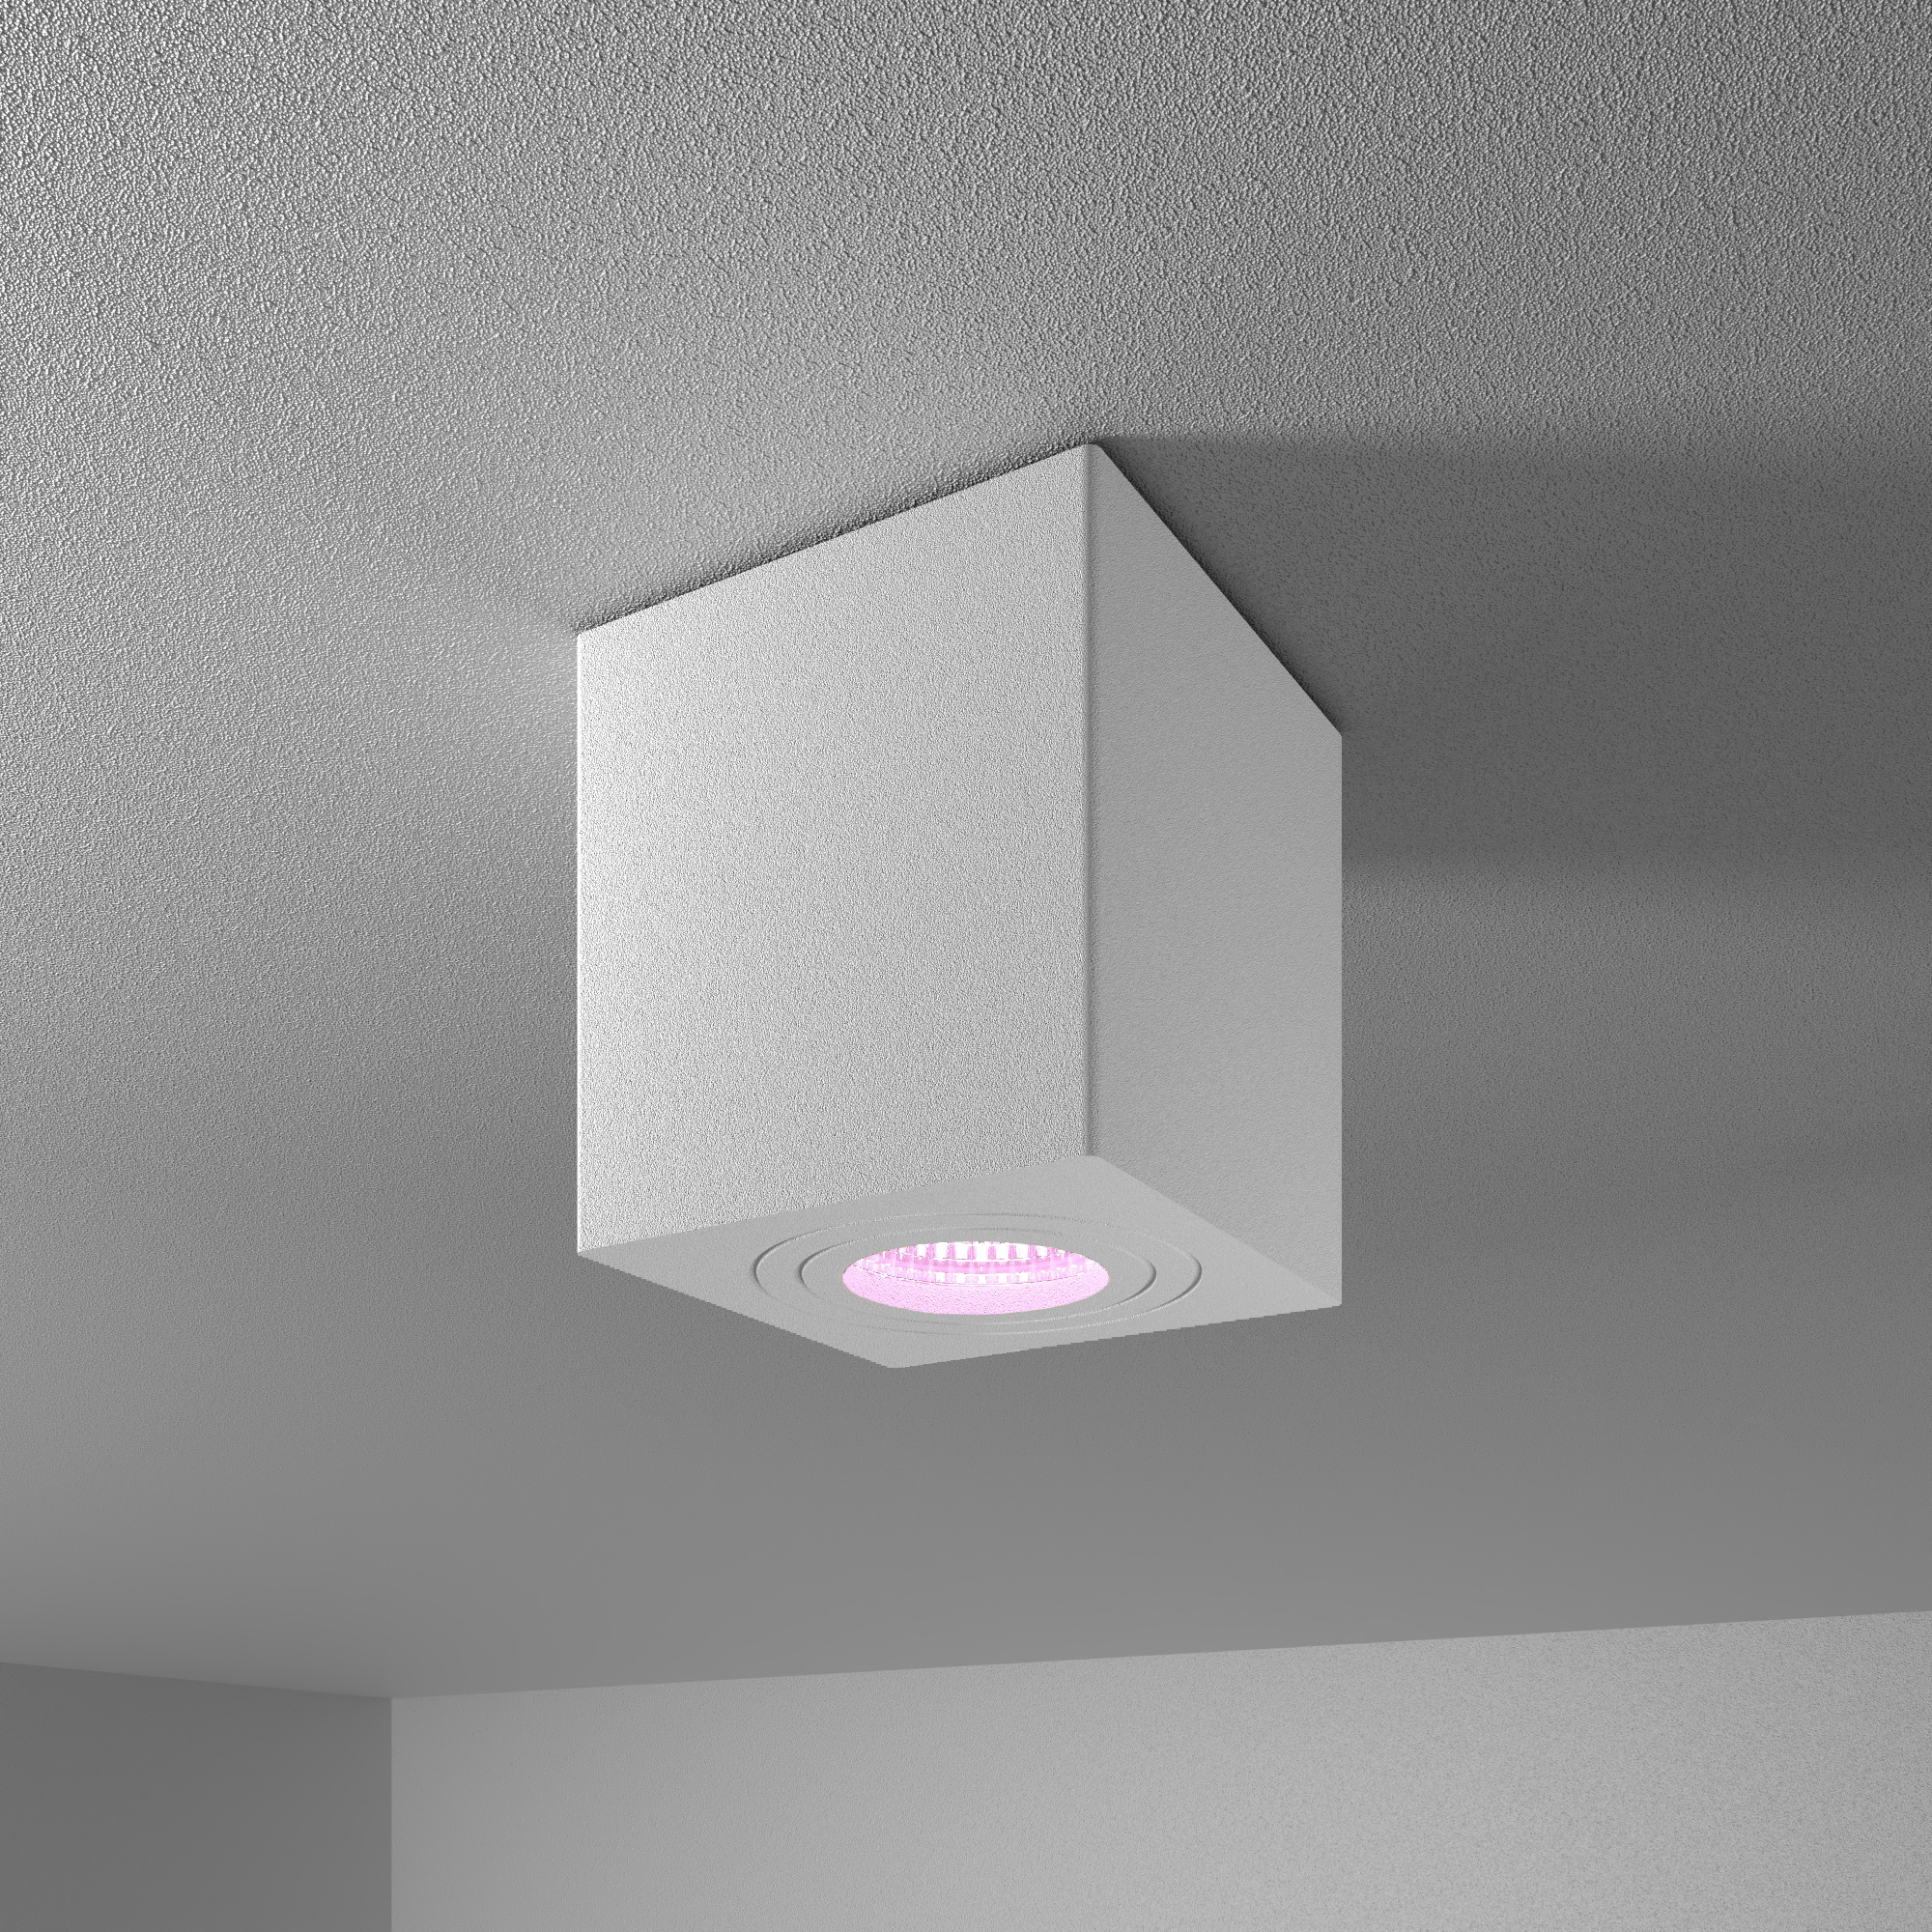 HOFTRONIC™ Gibbon Smart LED opbouw plafondspot - Vierkant - IP65 waterdicht - RGBWW Smart GU10 - WiFi & Bluetooth - Plafondlamp geschikt voor badkamer - Wit